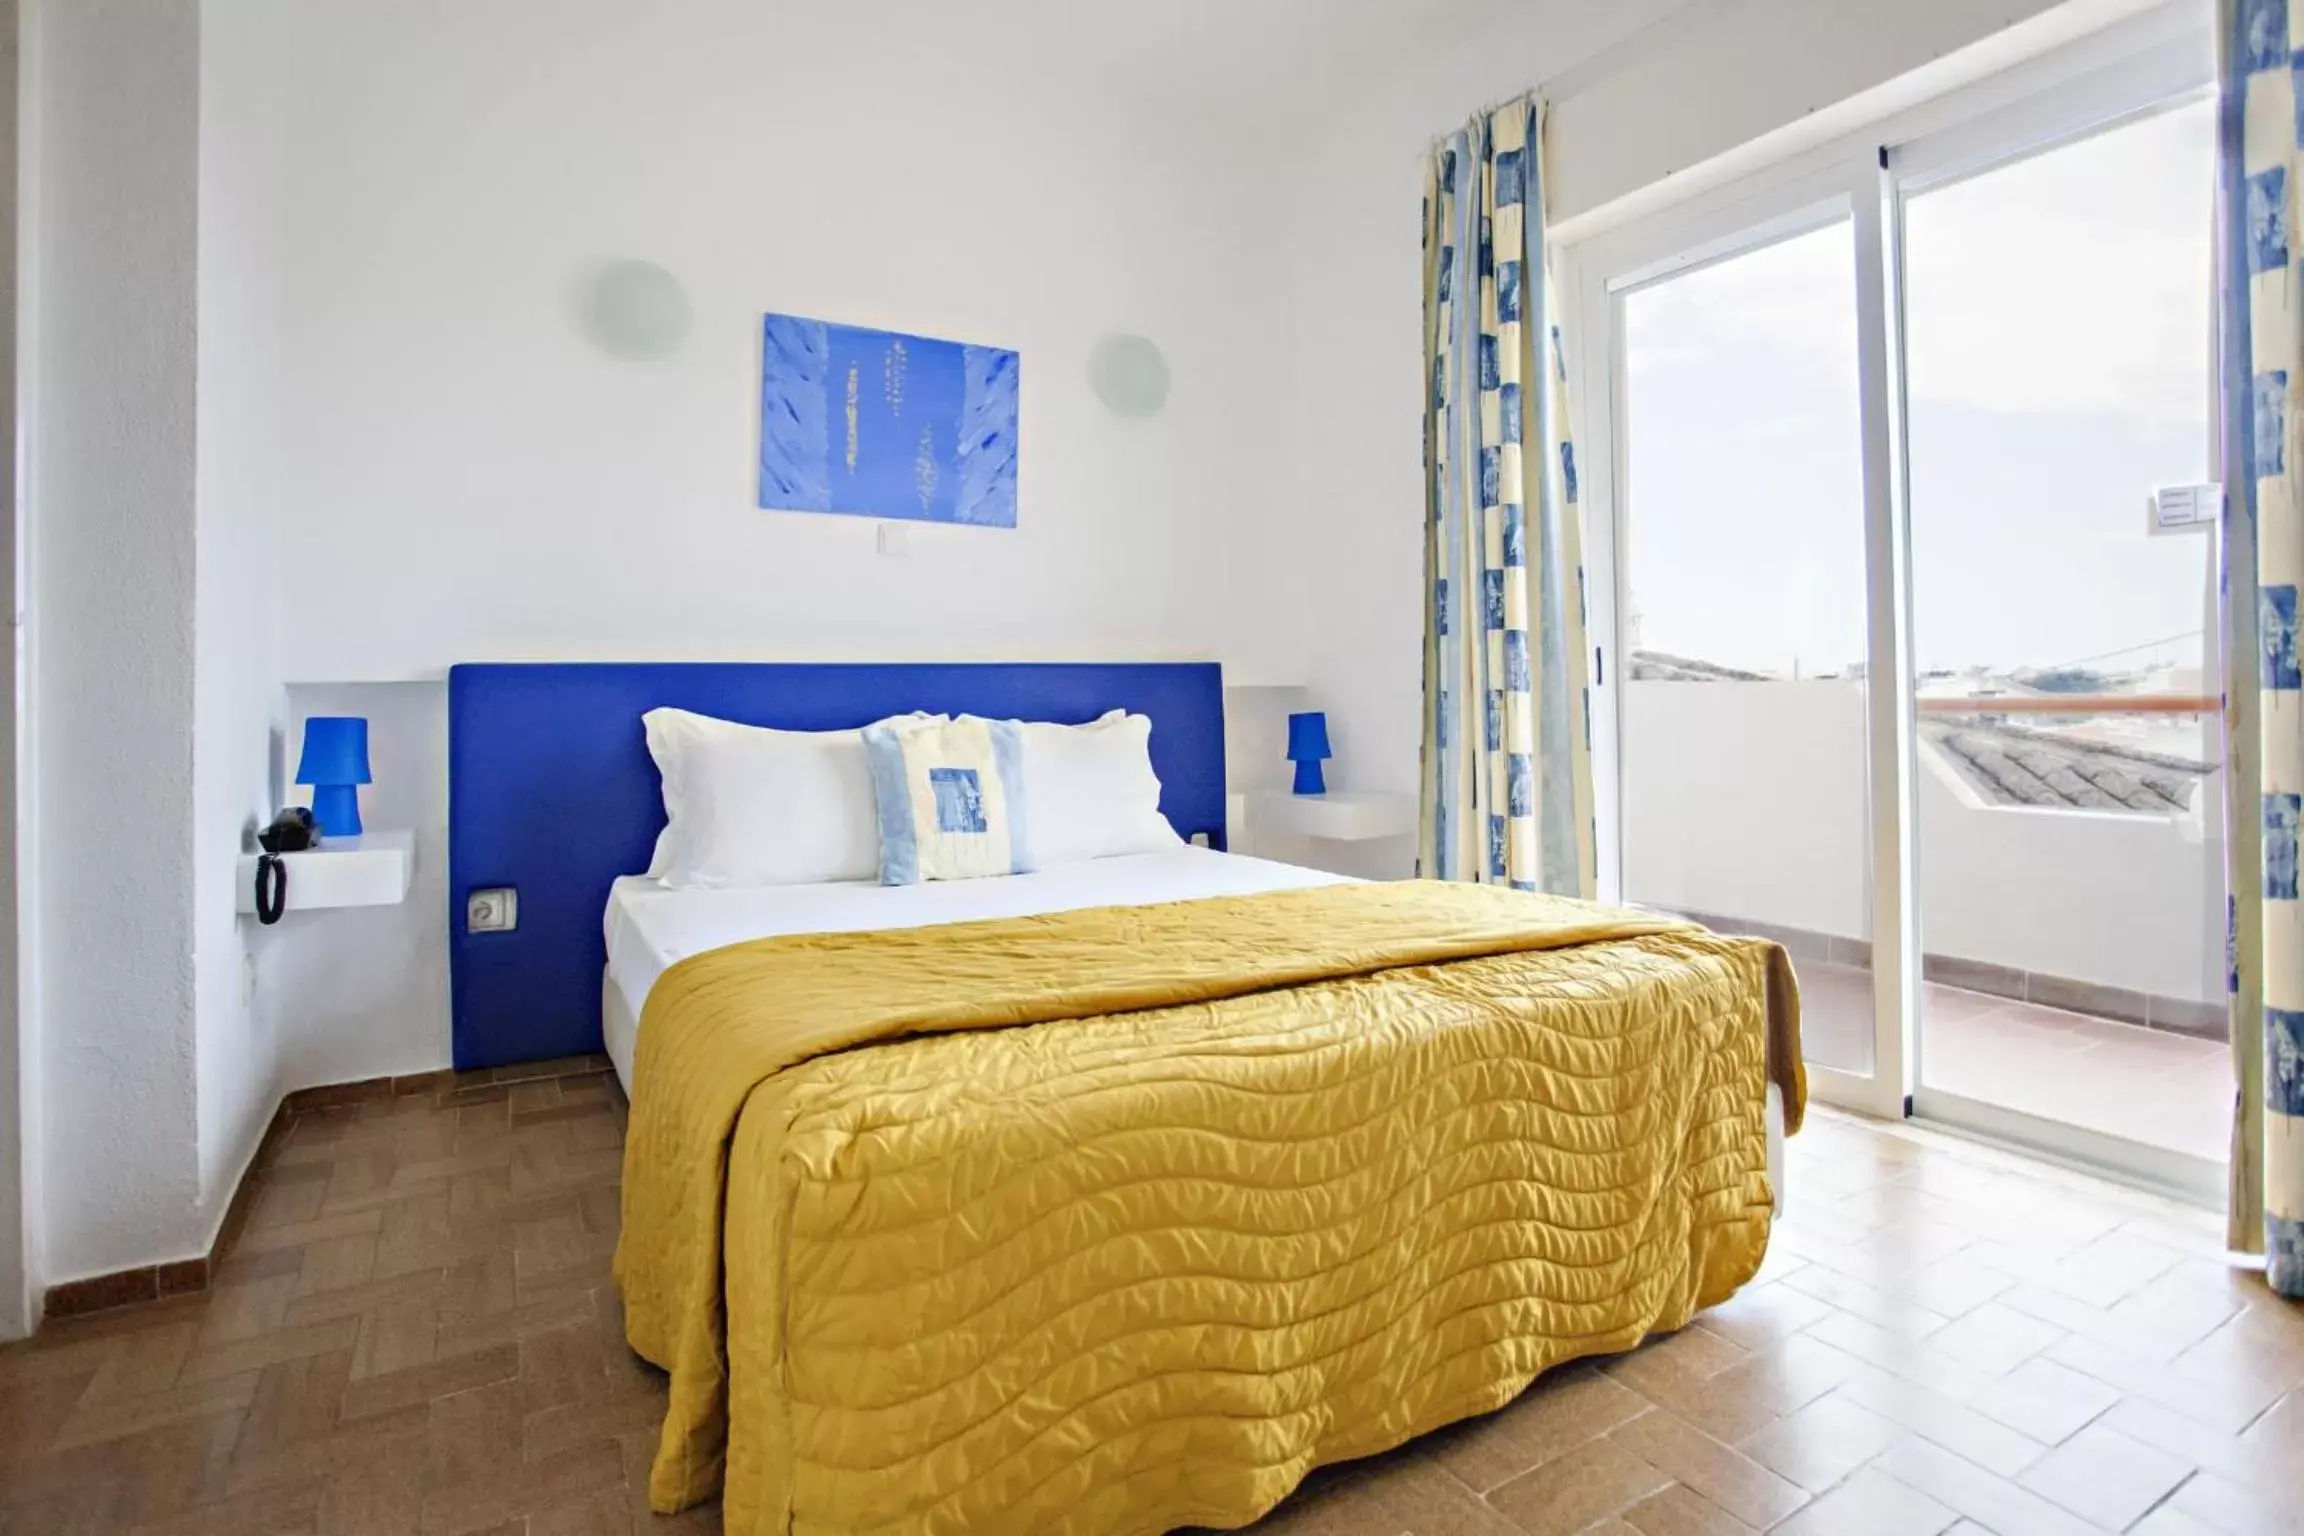 Bedroom, Room Photo in Apartamentos Turísticos Gida by Umbral